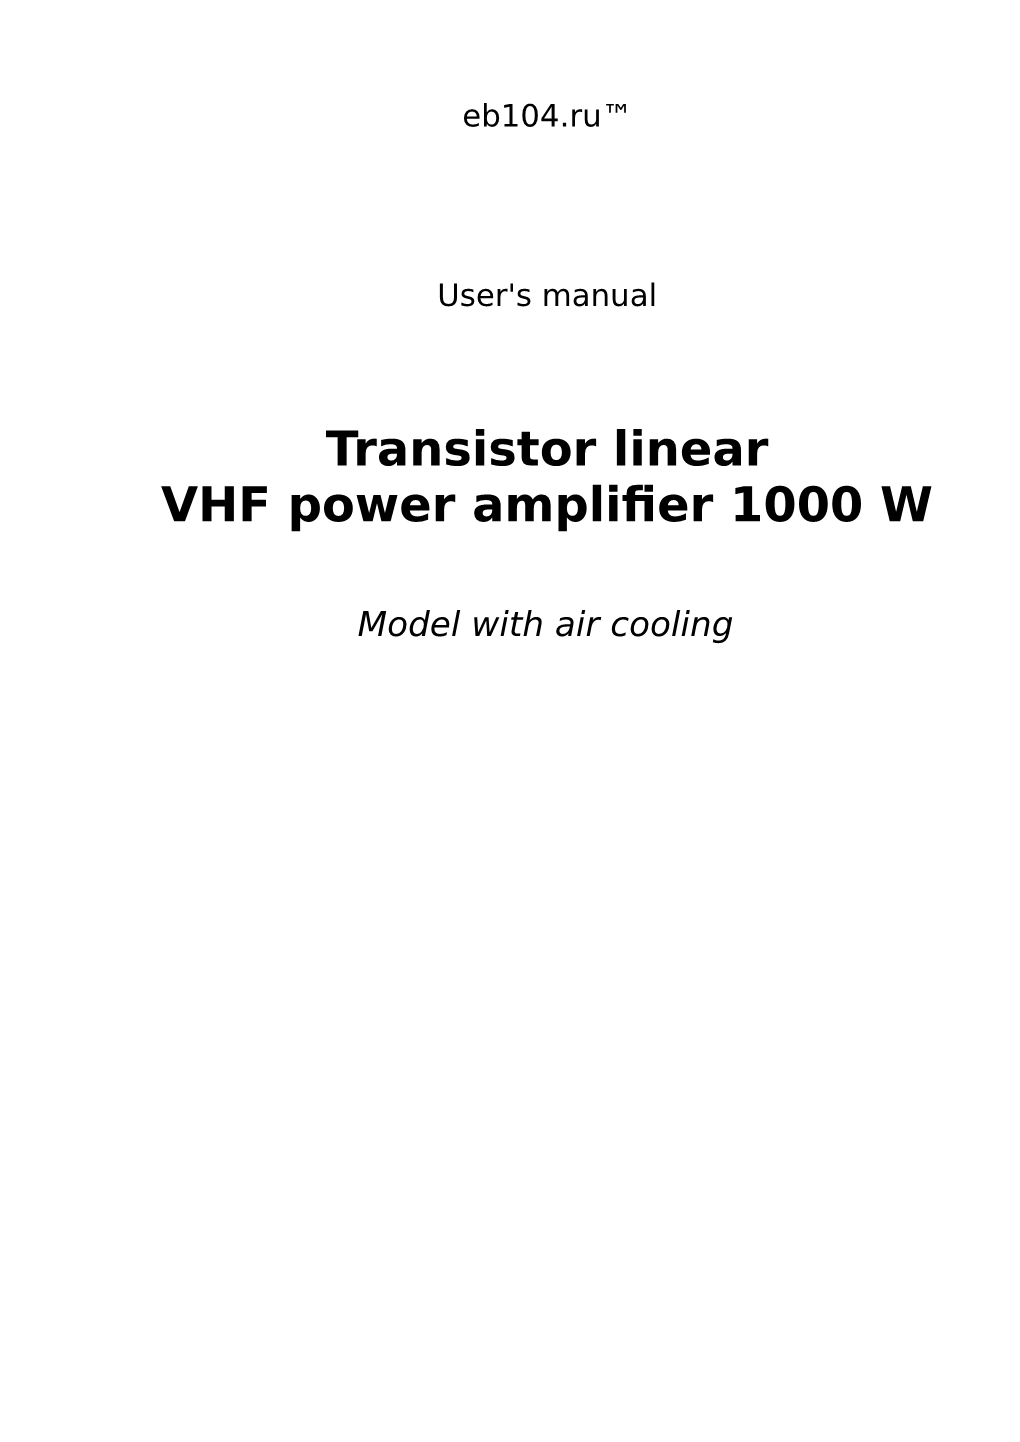 Transistor Linear VHF Power Amplifier 1000 W